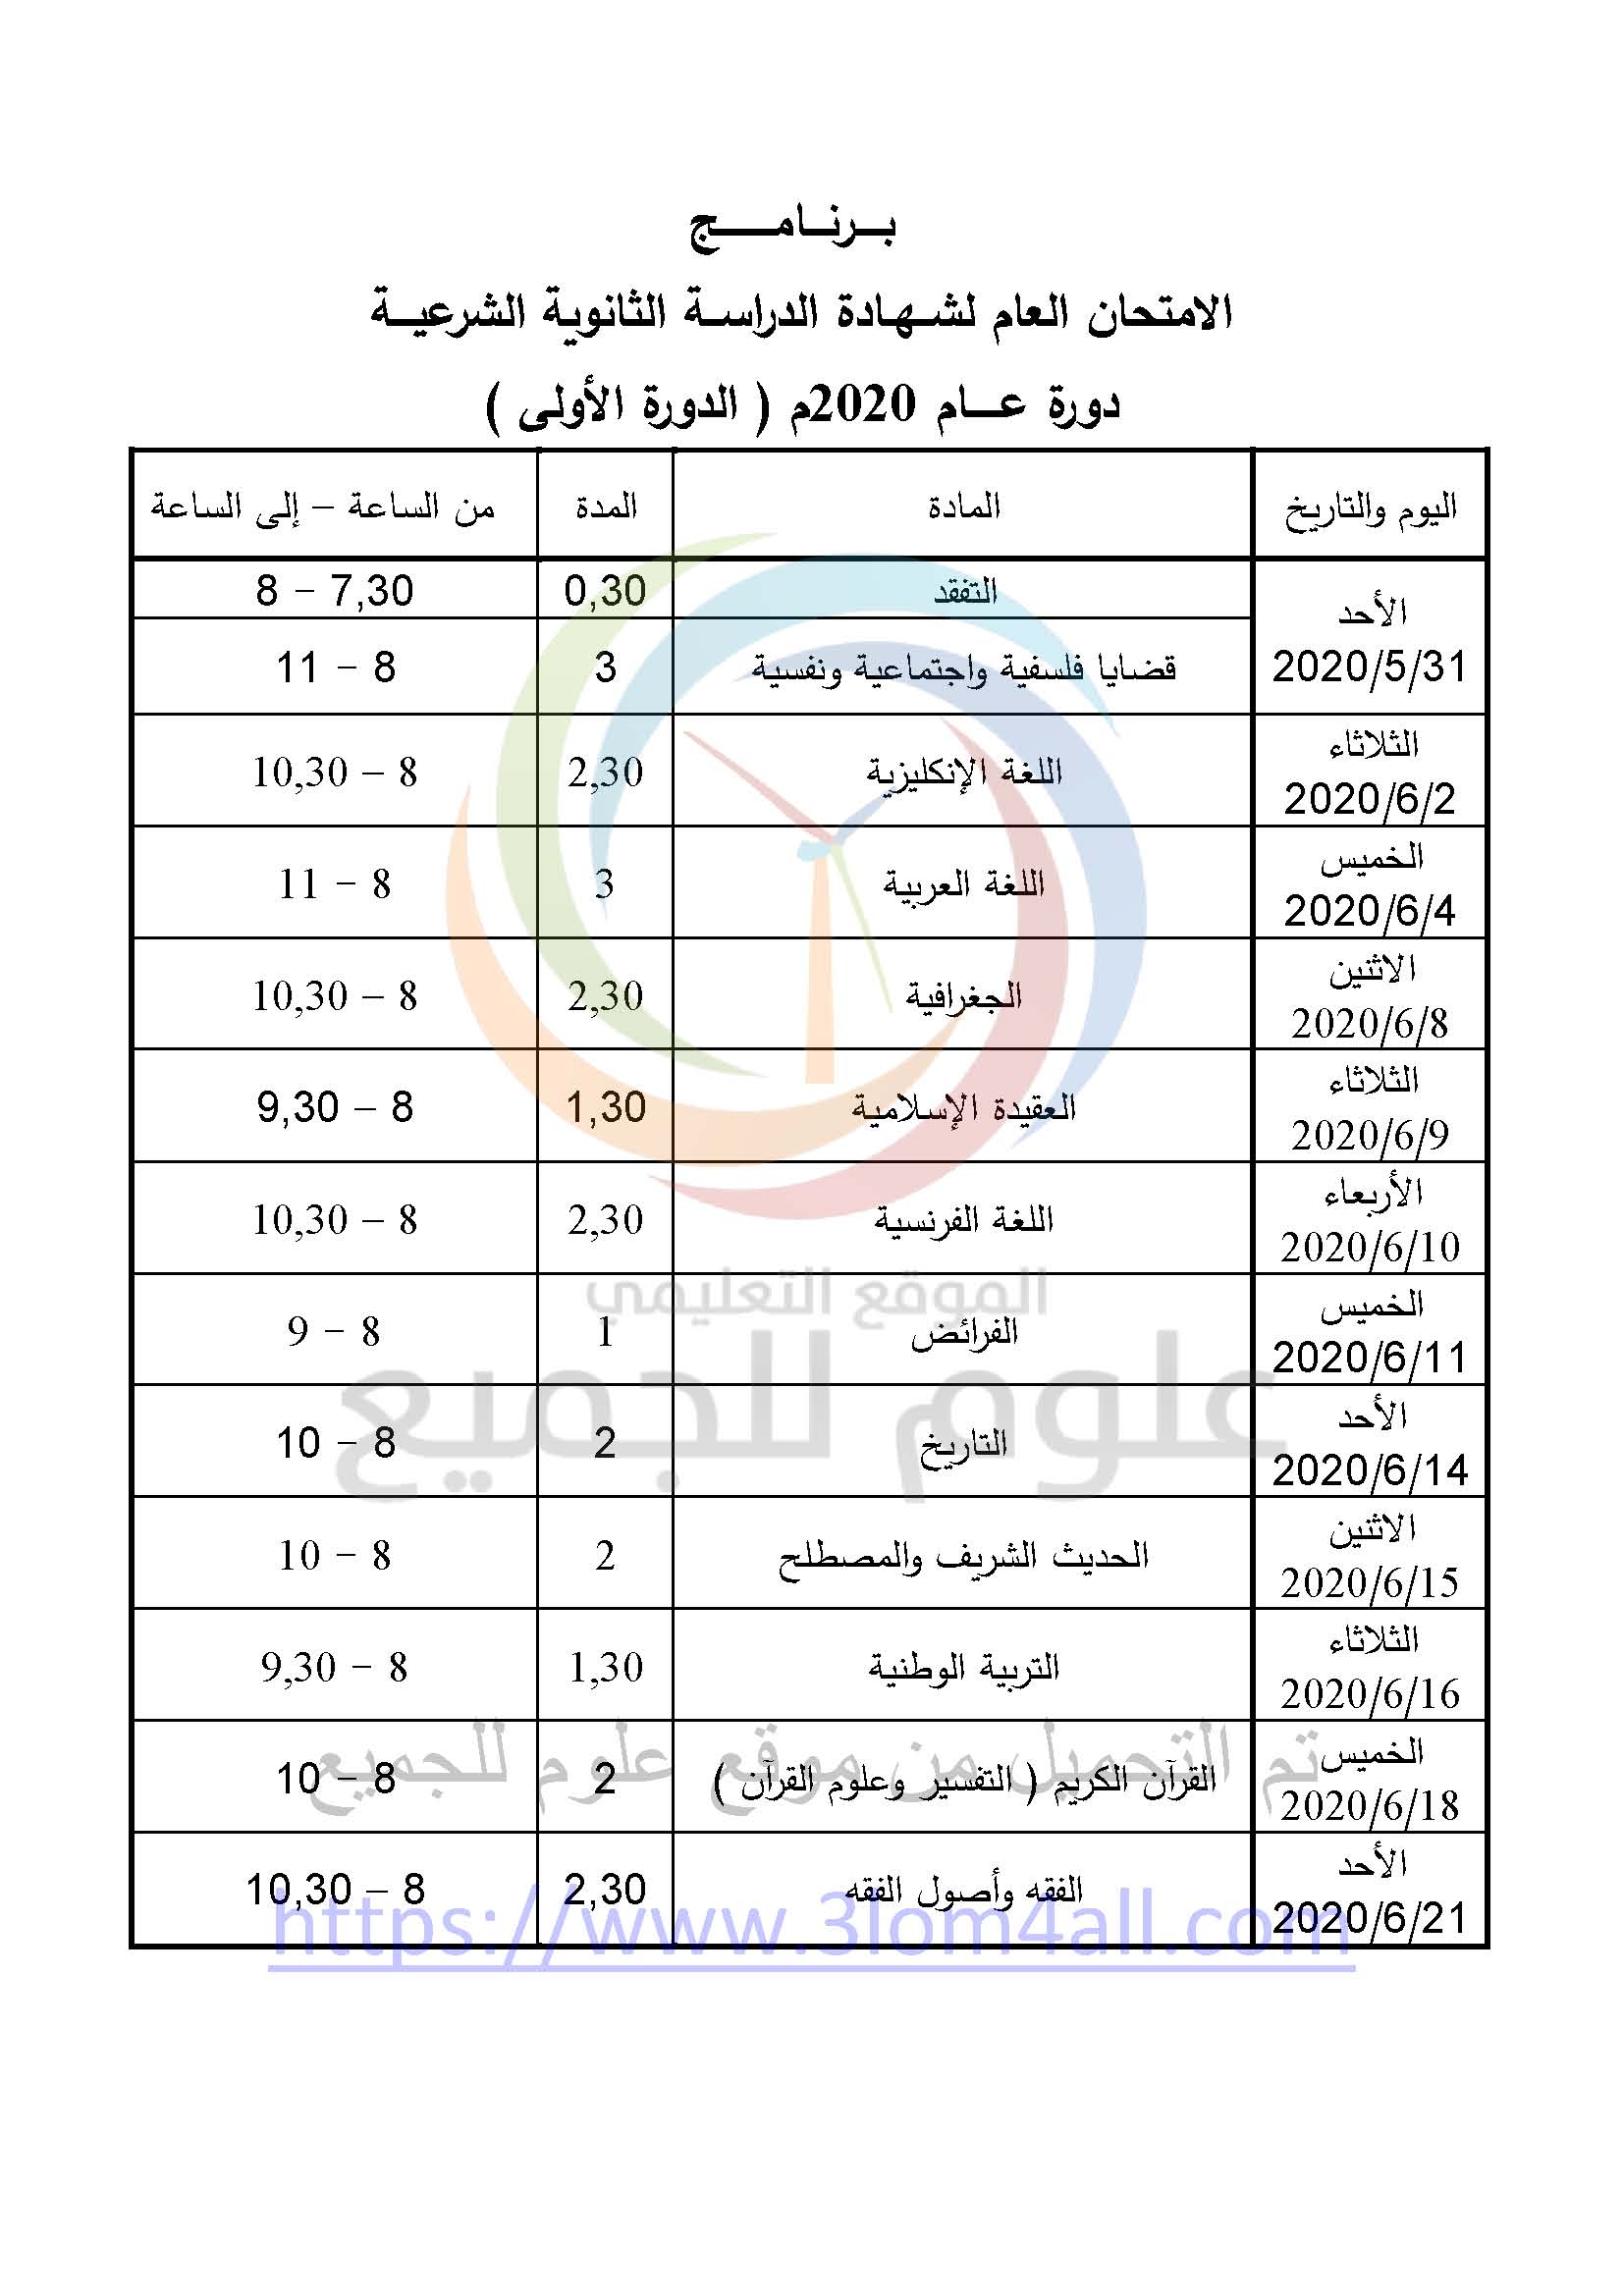 بكالوريا 2020 برنامج امتحان البكالوريا الدورة الأولى سوريا 